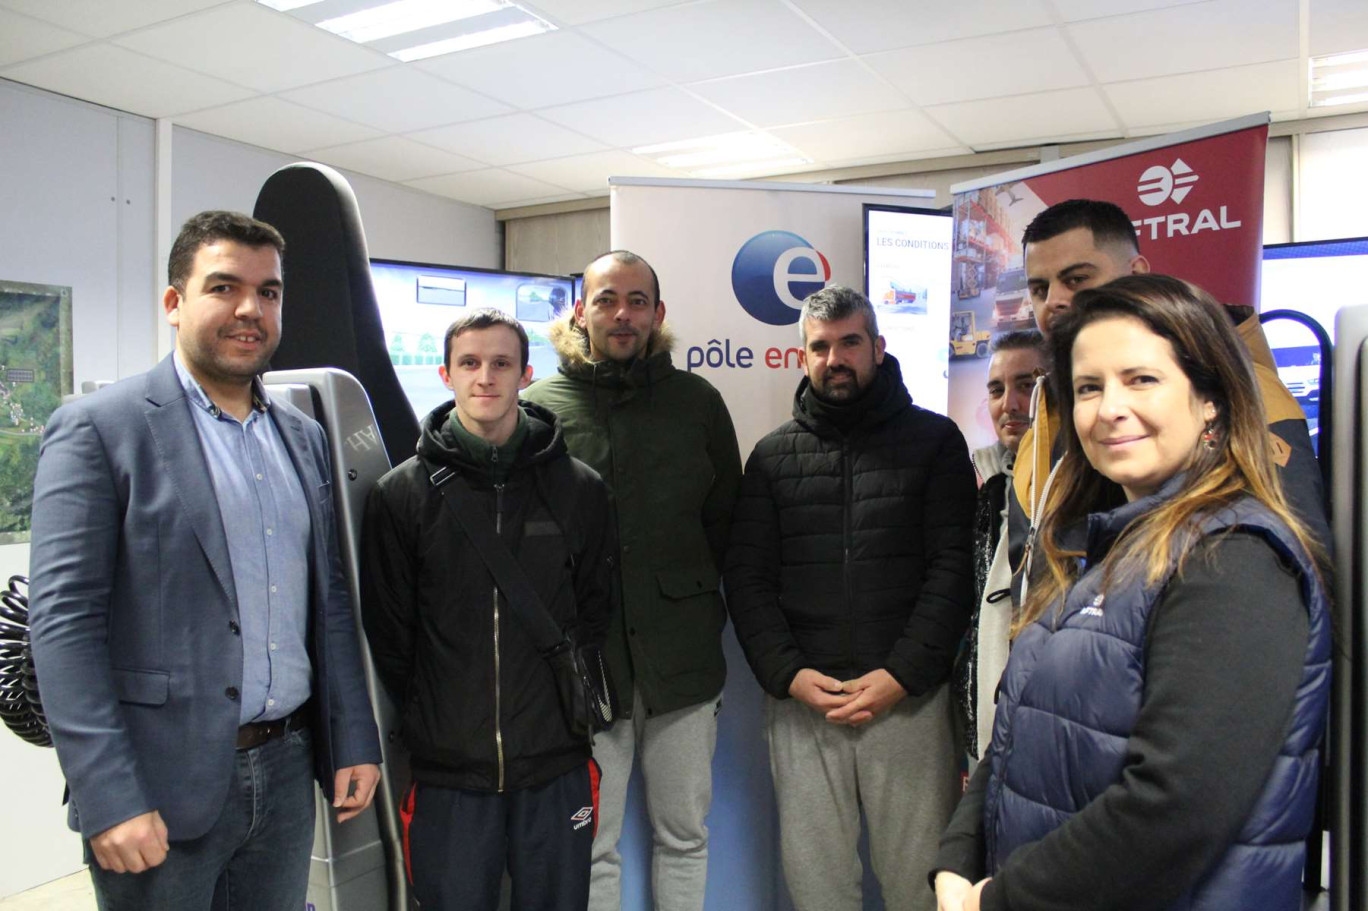  (à g.)Youssef El Grimat, directeur de l’agence Pôle emploi de Laon et Tatiana Degroise, directrice du site Aftral de Laon, ont accueilli des candidats à une formation en conduite poids lourds. 